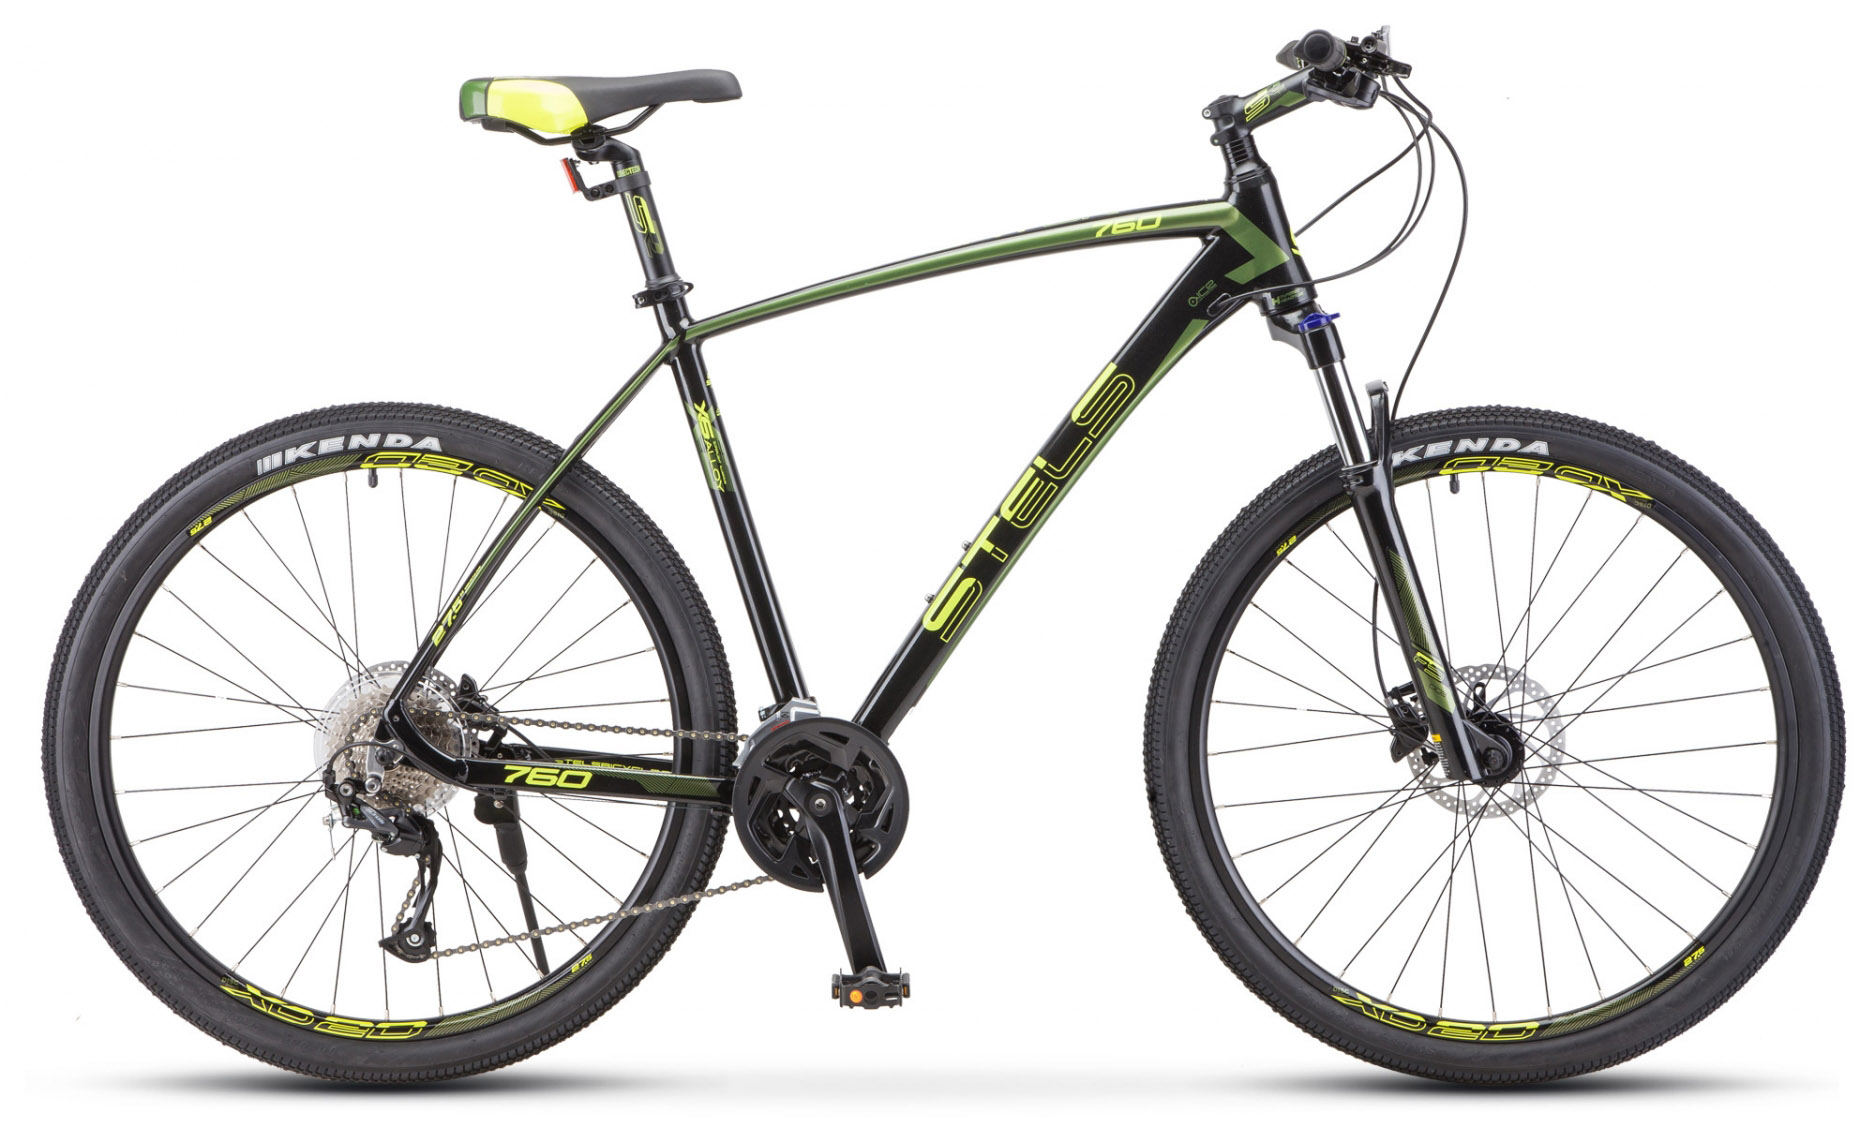  Отзывы о Горном велосипеде Stels Navigator 760 D 27.5" V010 2020